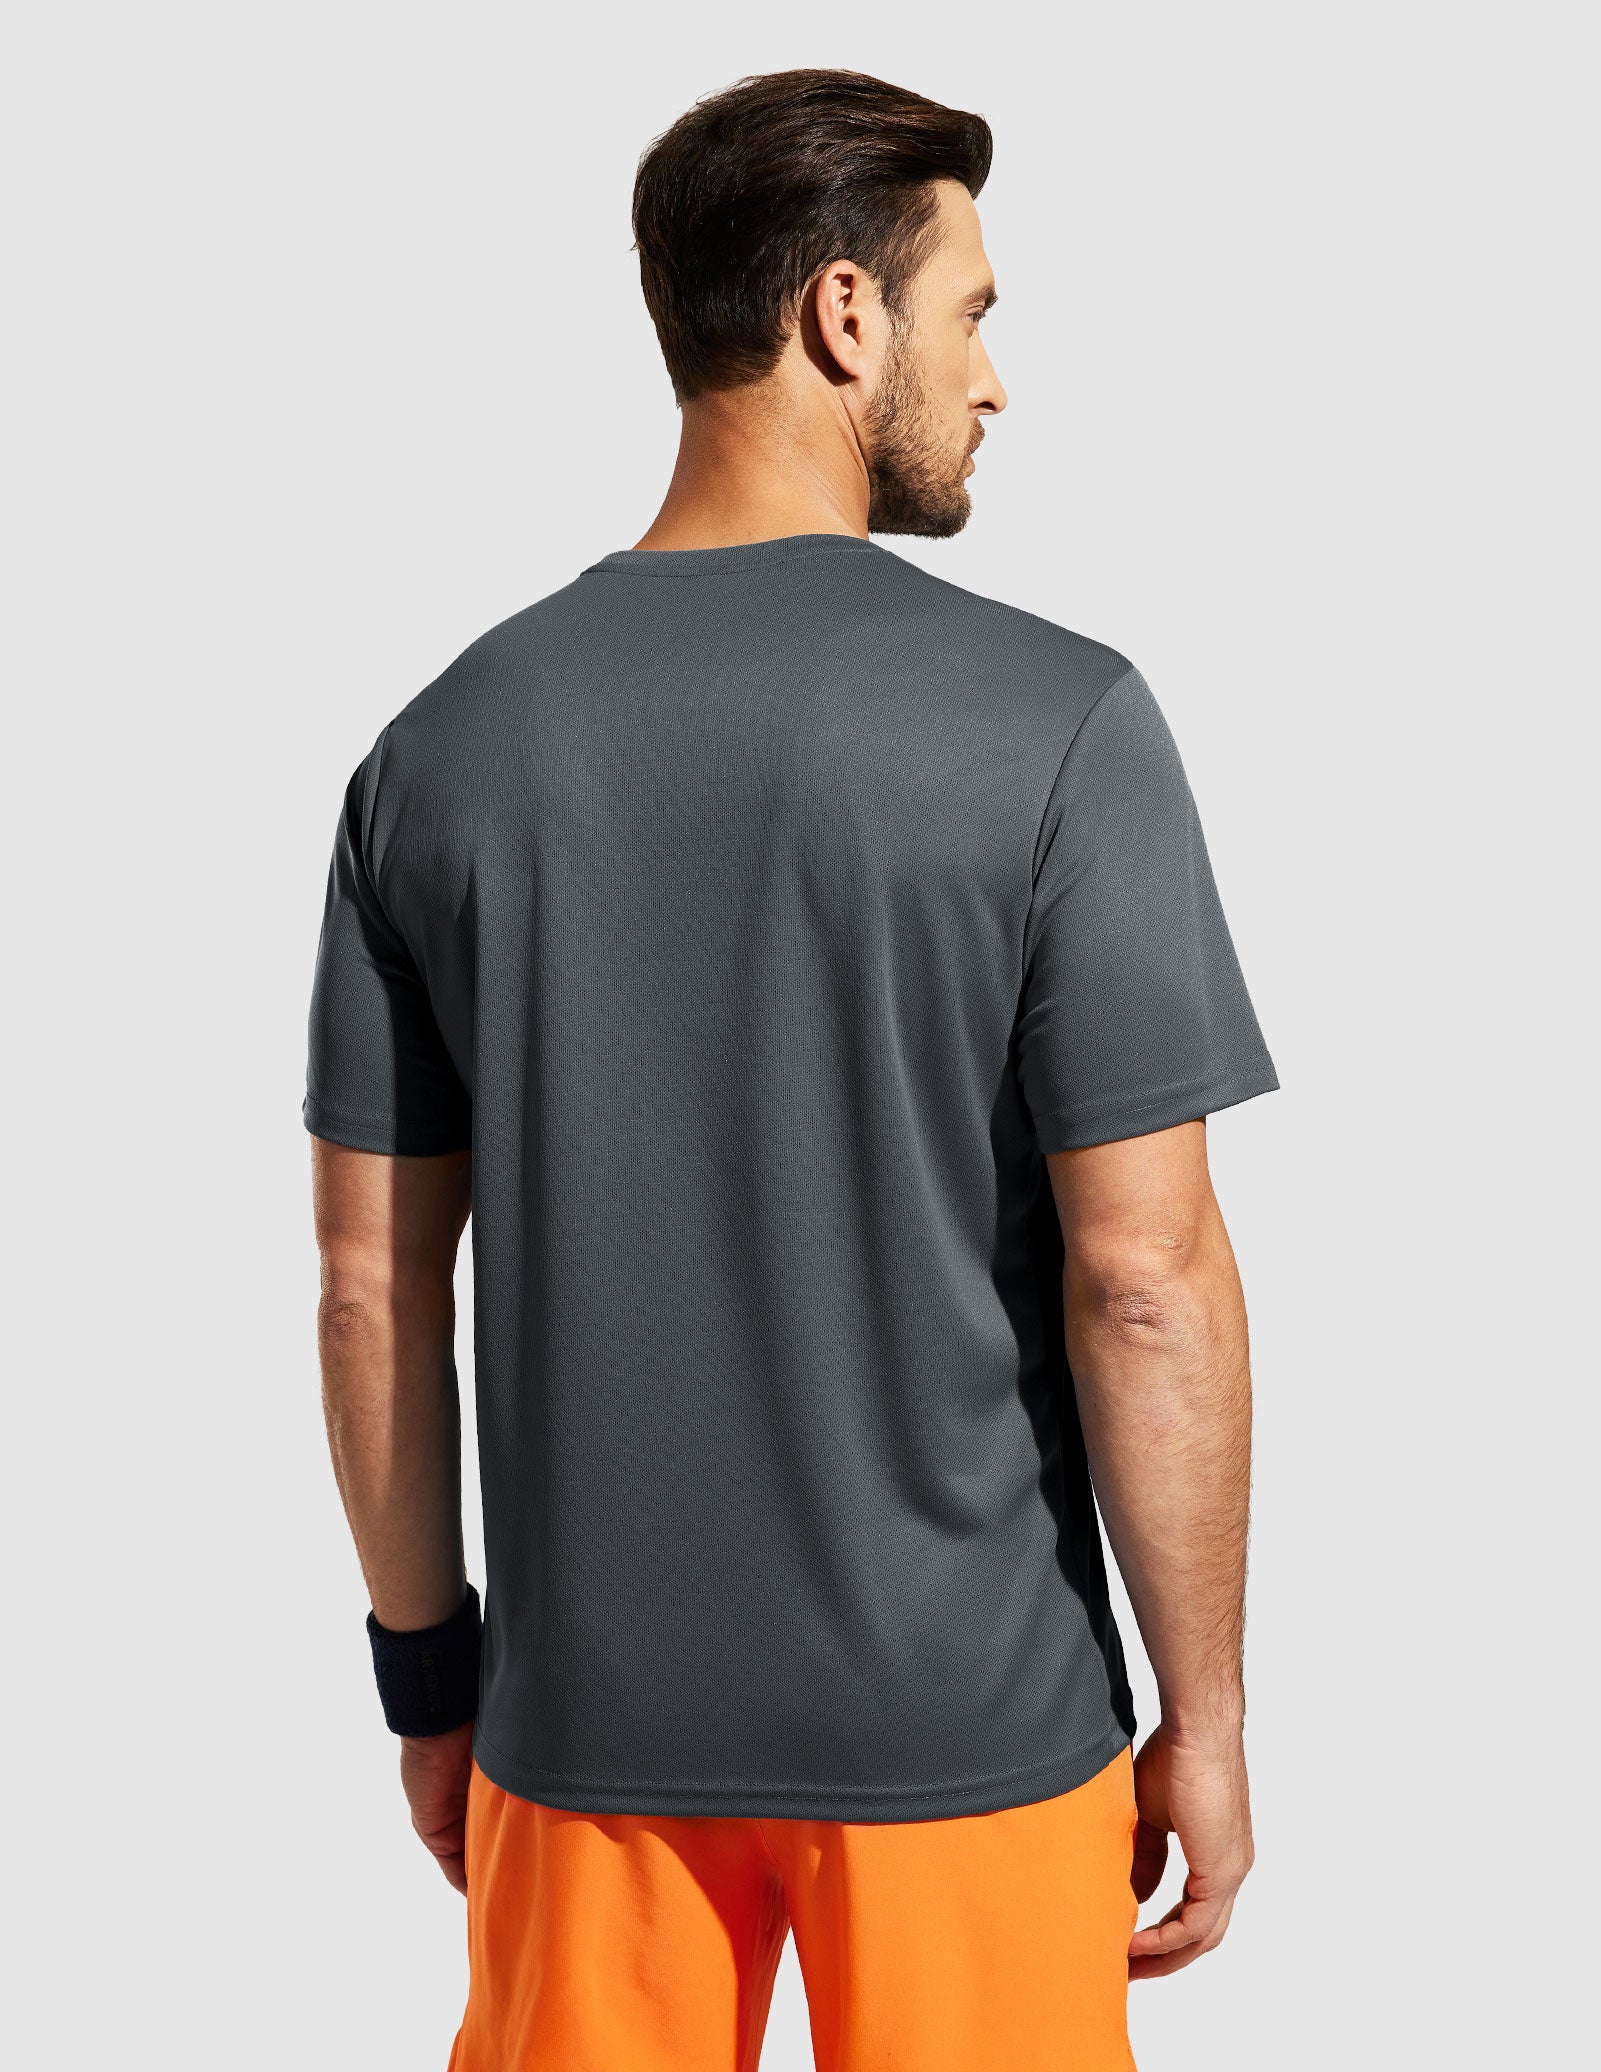 Dry Fit Workout-T-shirts voor heren voor atletisch hardlopen in de sportschool